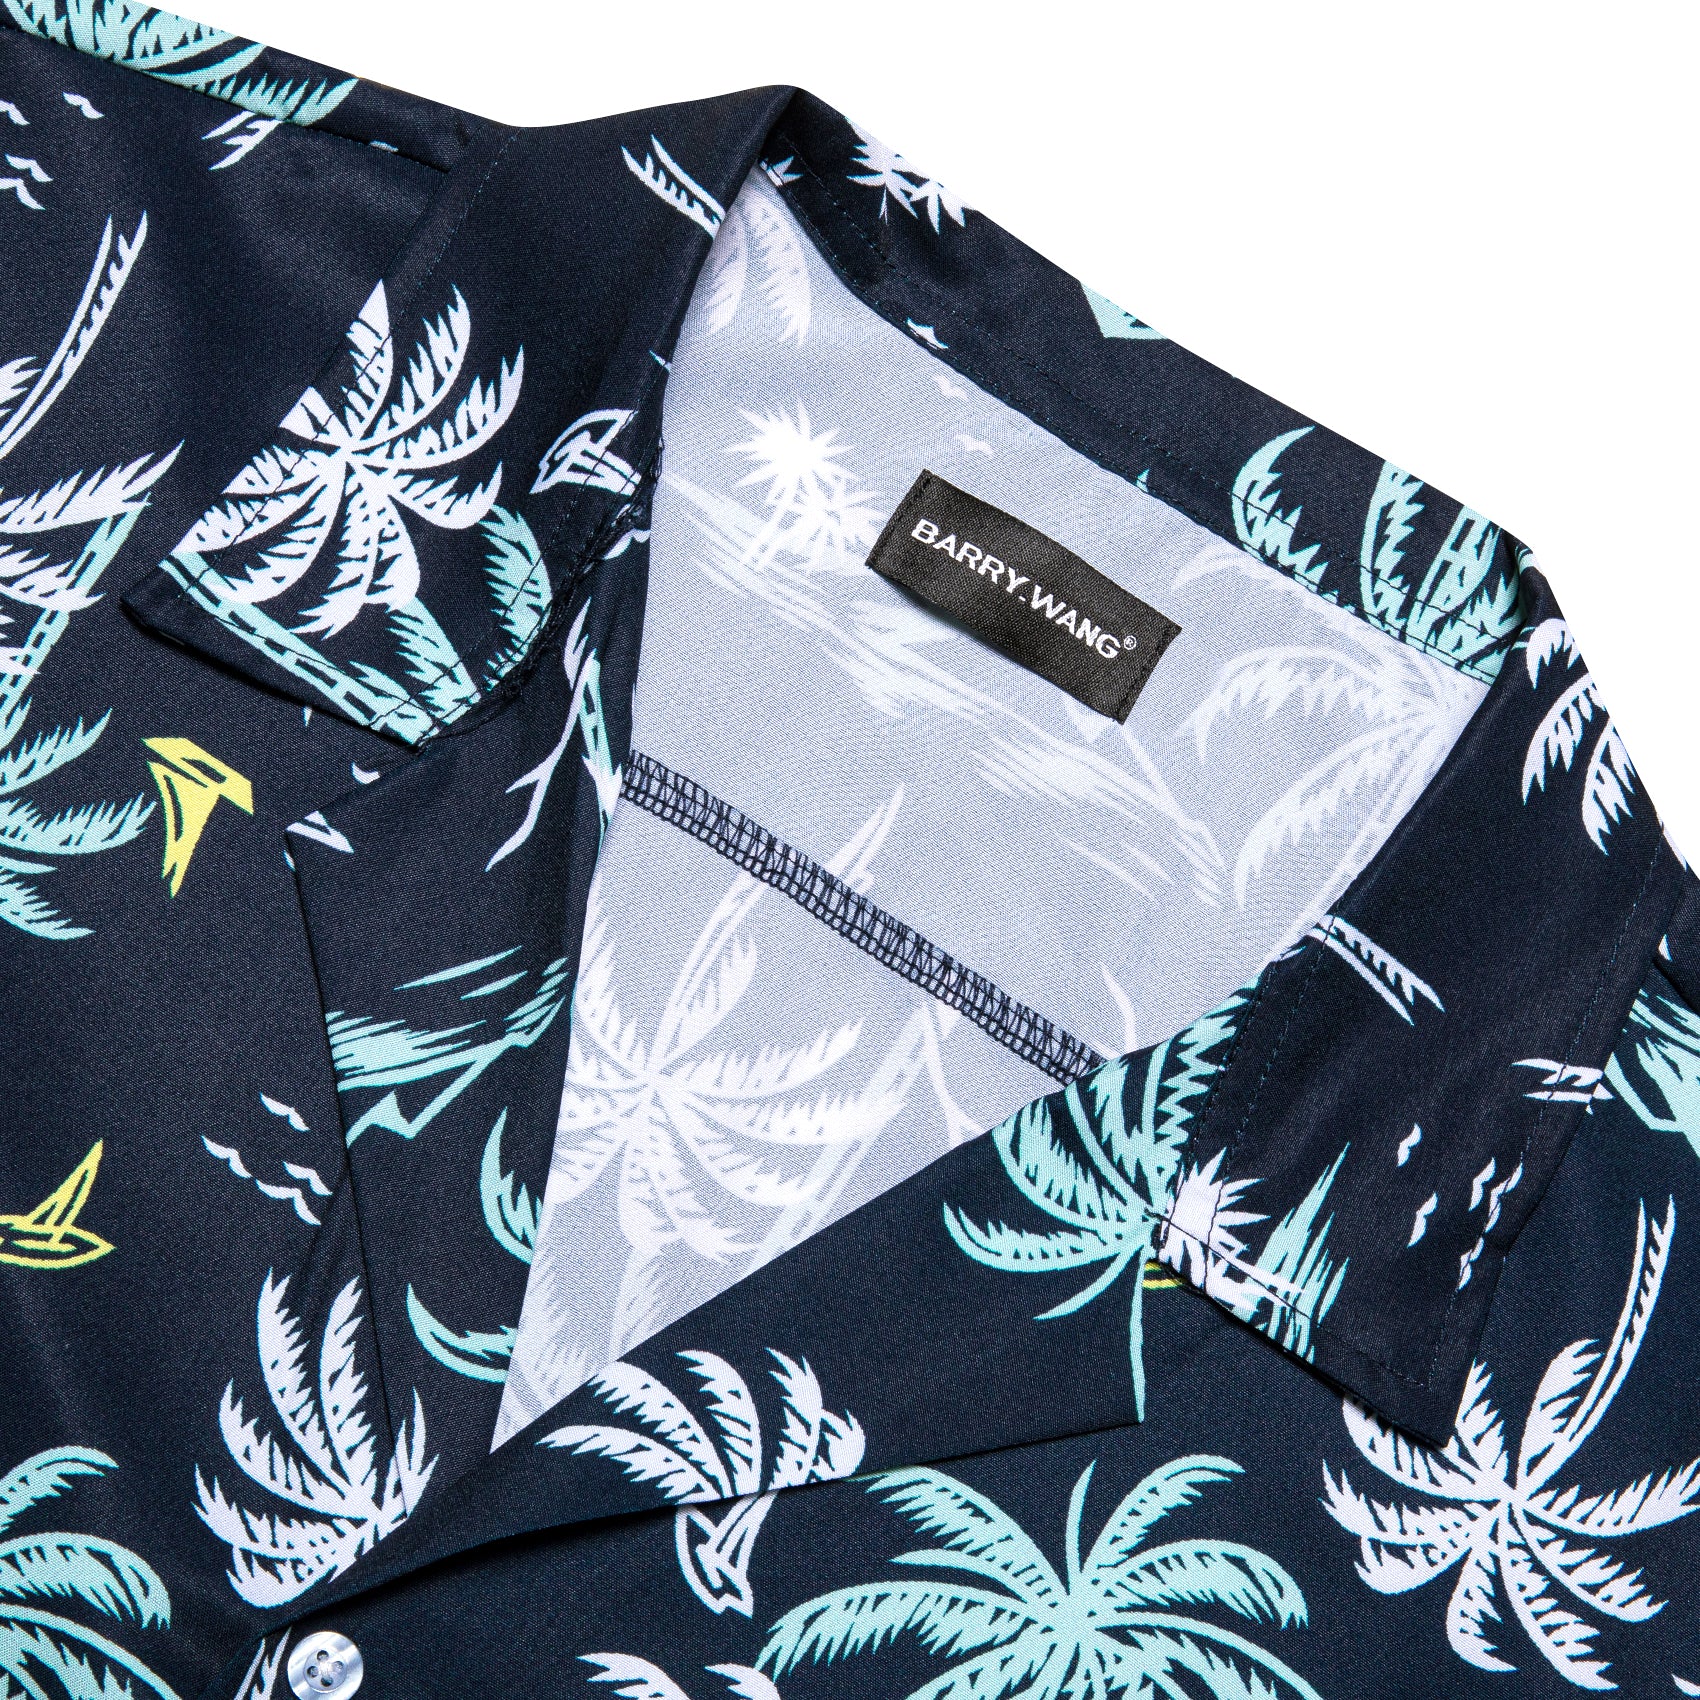 Barry Wang Mens Shirt Men's Oriental Blue White Summer Hawaii Shirt